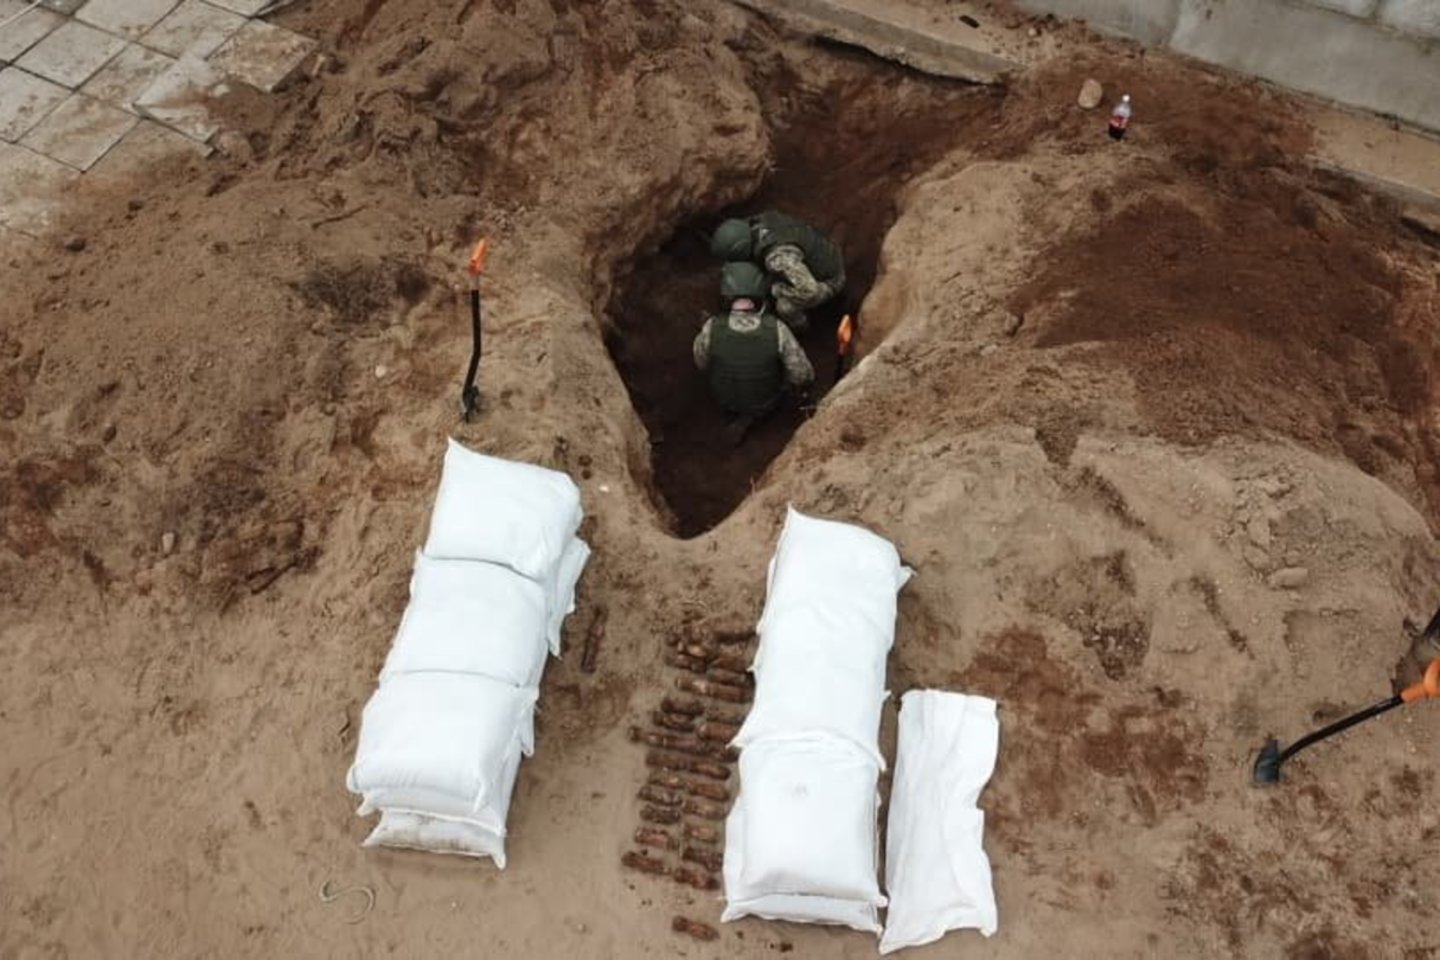  Kariuomenės išminuotojai sekmadienį vienoje sodyboje netoli Kryžkalnio sunaikino įspūdingą sprogmenų arsenalą.<br> Facebook/Juozo Vitkaus inžinerijos batalionas nuotr.